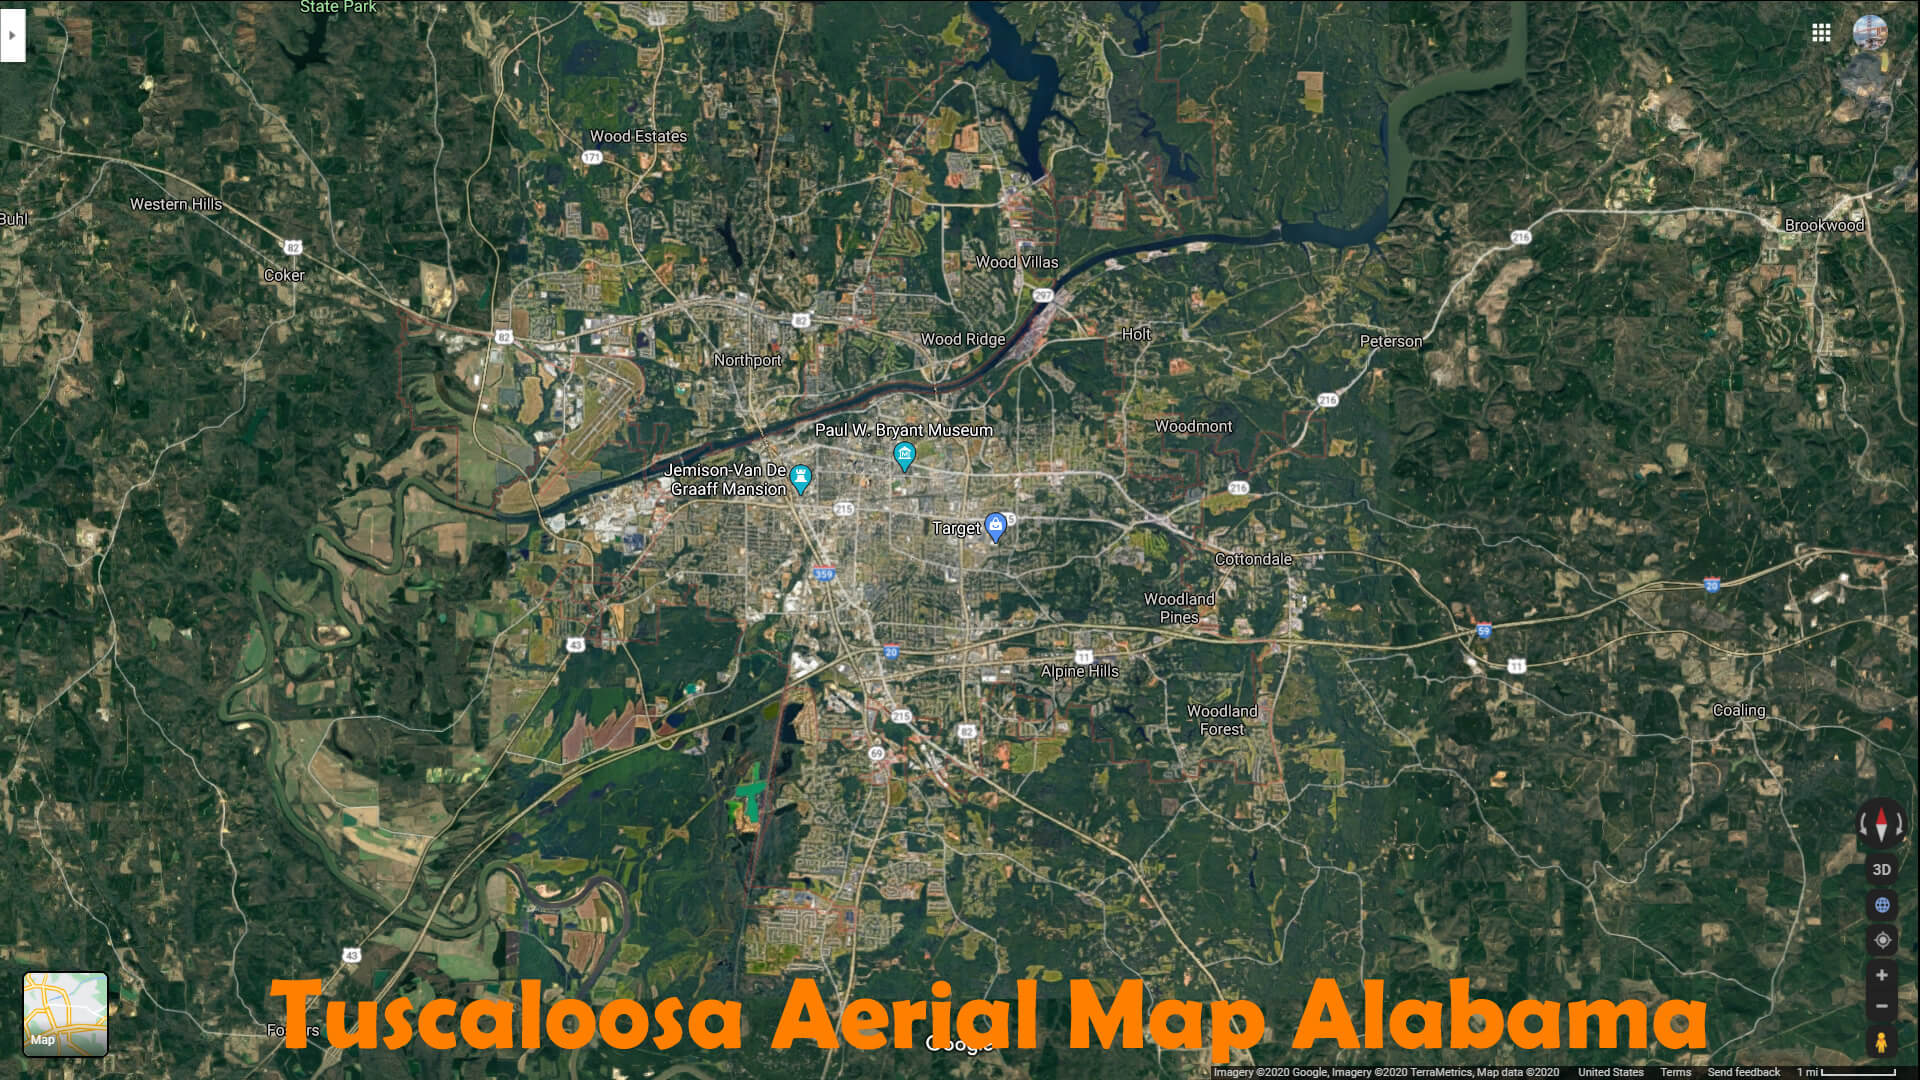 Tuscaloosa Aerial Map Alabama